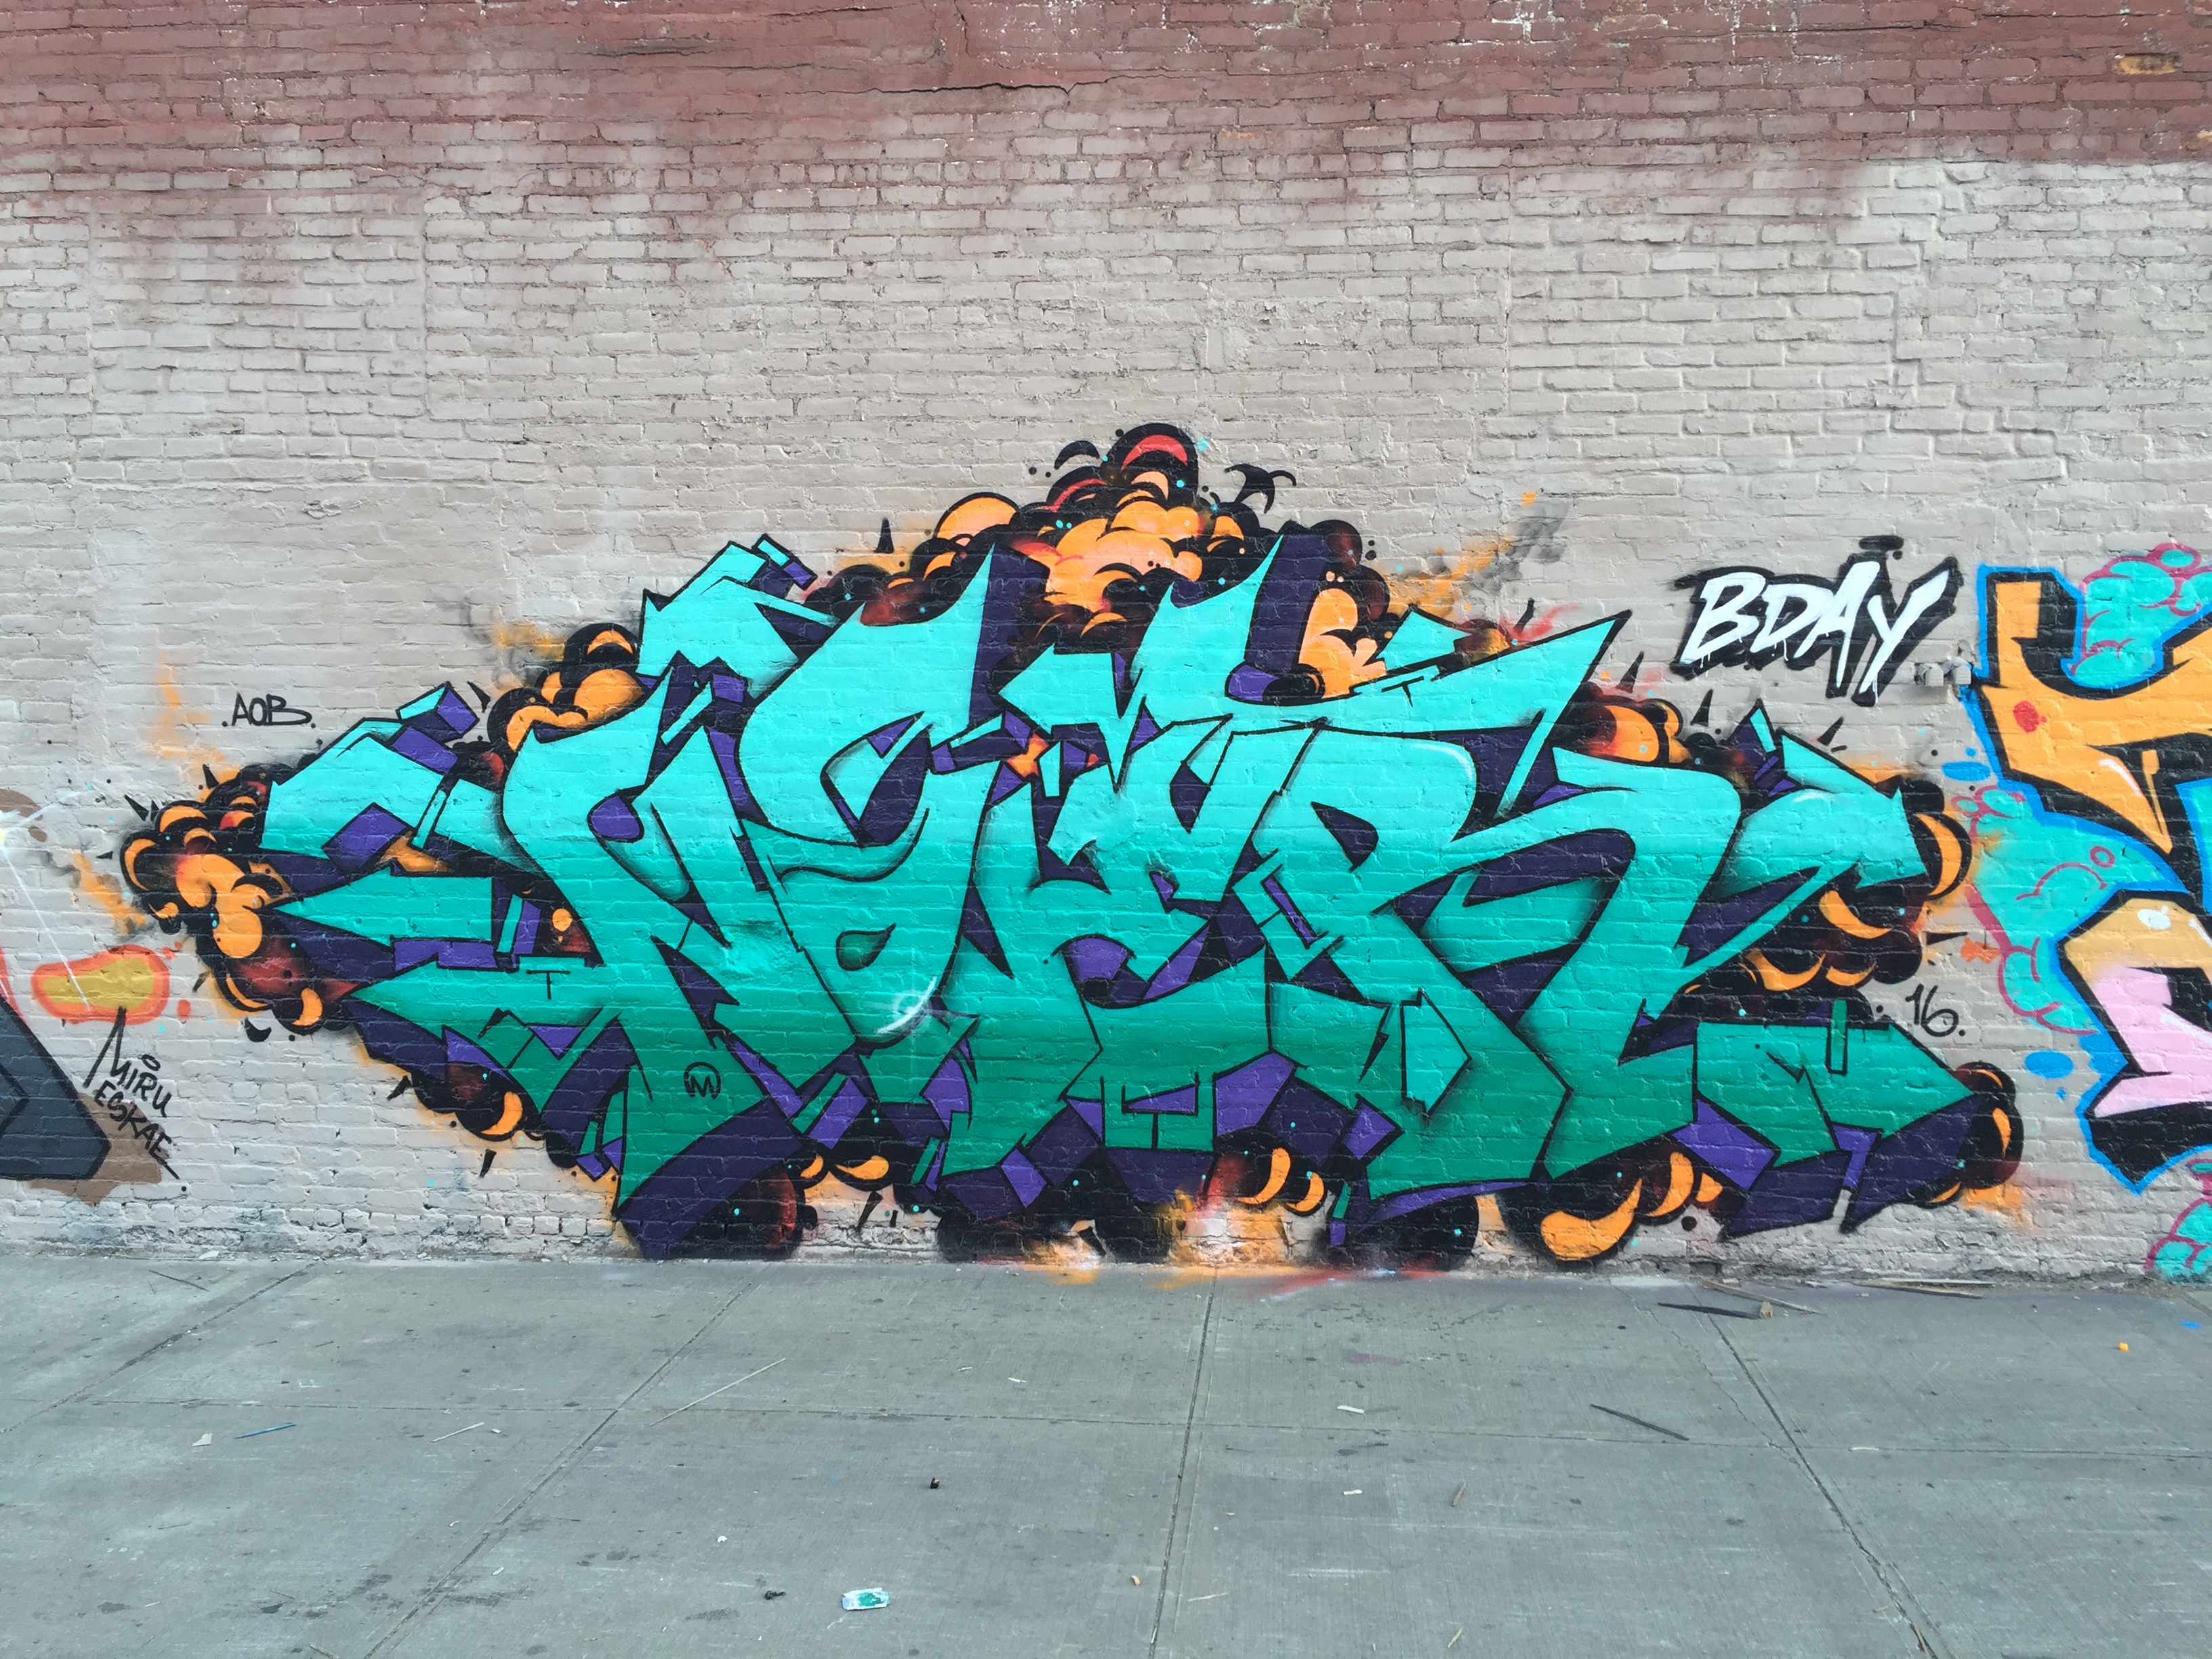 NOVER, Birthday Wall in Brooklyn, NY, 2015.